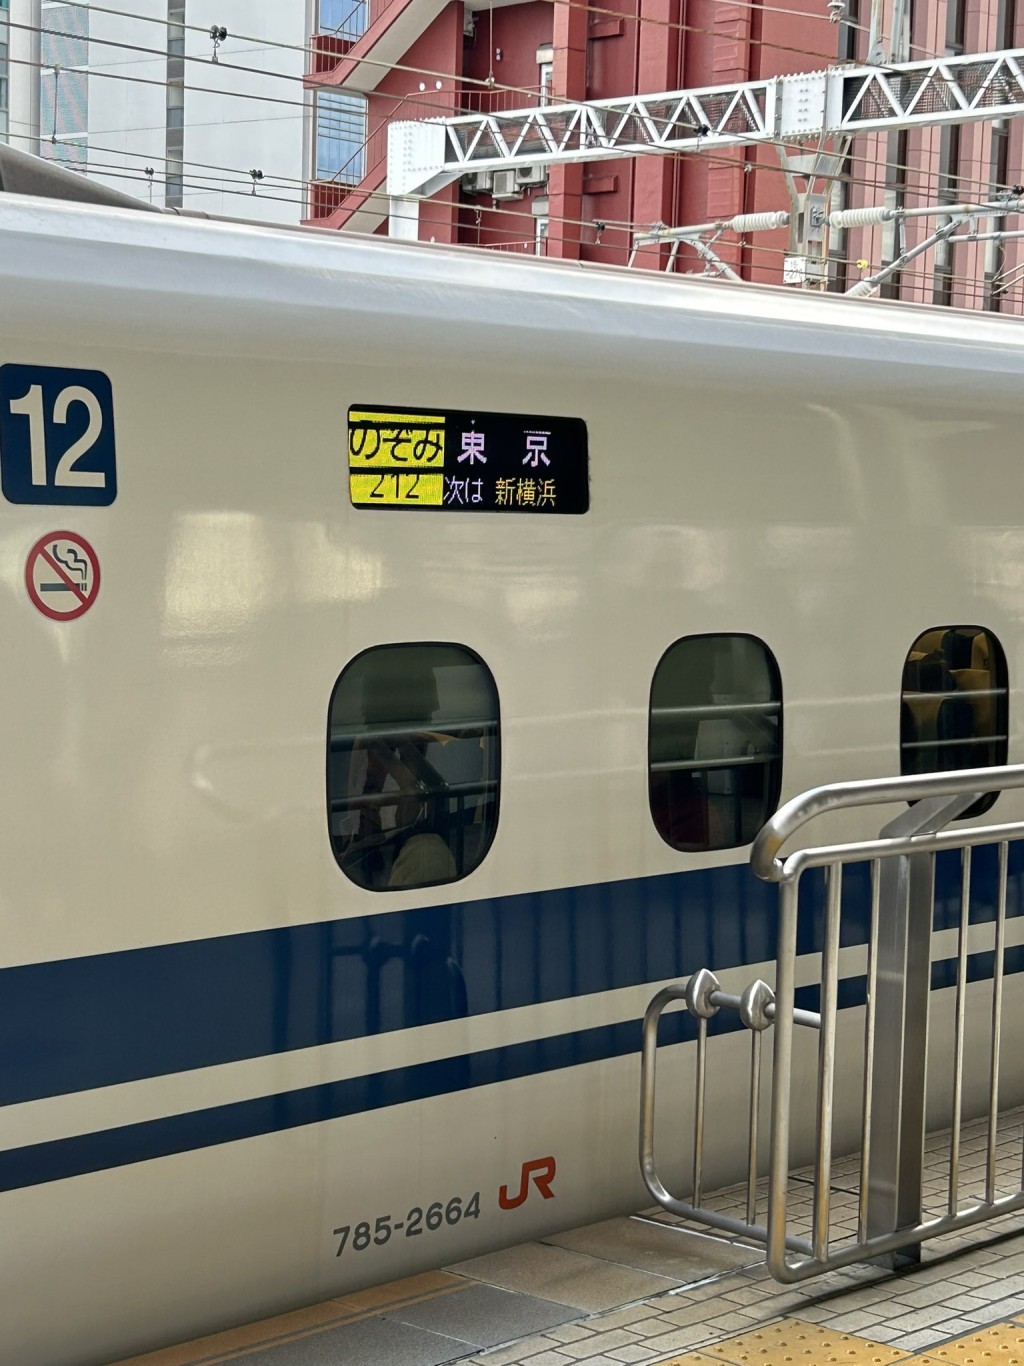 日本JR静冈站有僧人跳落路轨找手机，导致新干线部份列车受阻。示意图